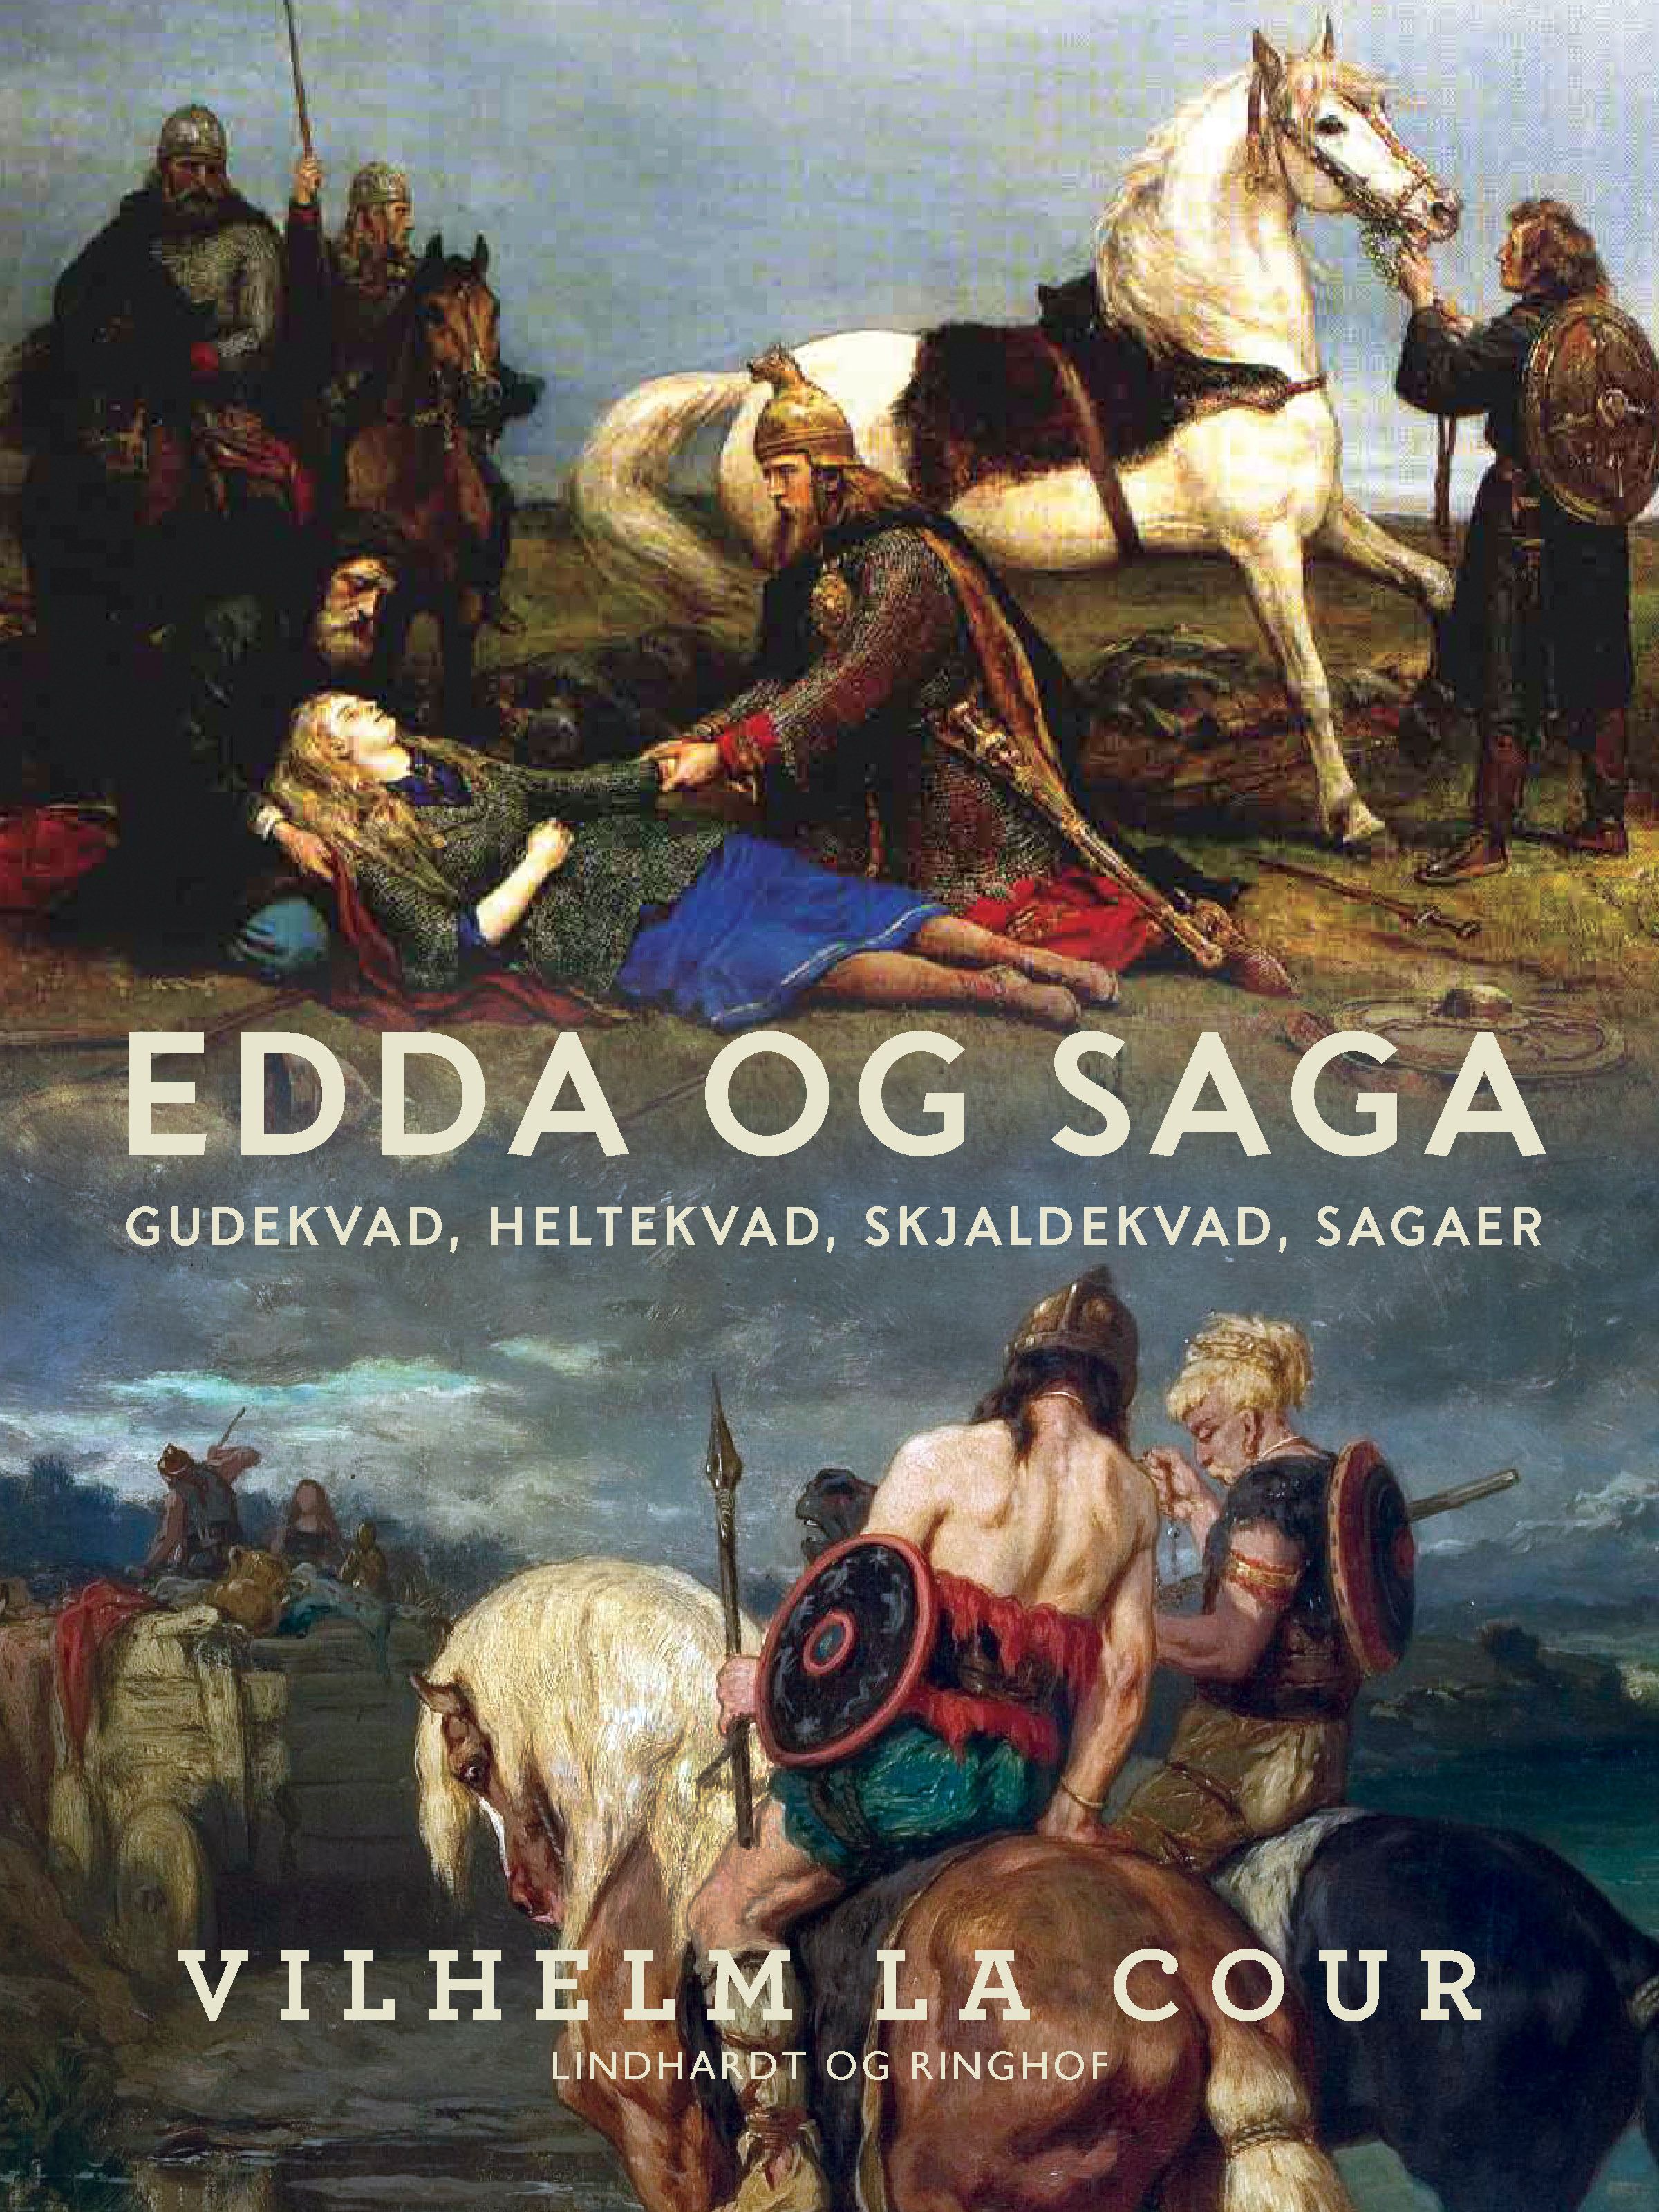 Edda og Saga. Gudekvad, heltekvad, skjaldekvad, sagaer, e-bog af Vilhelm La Cour